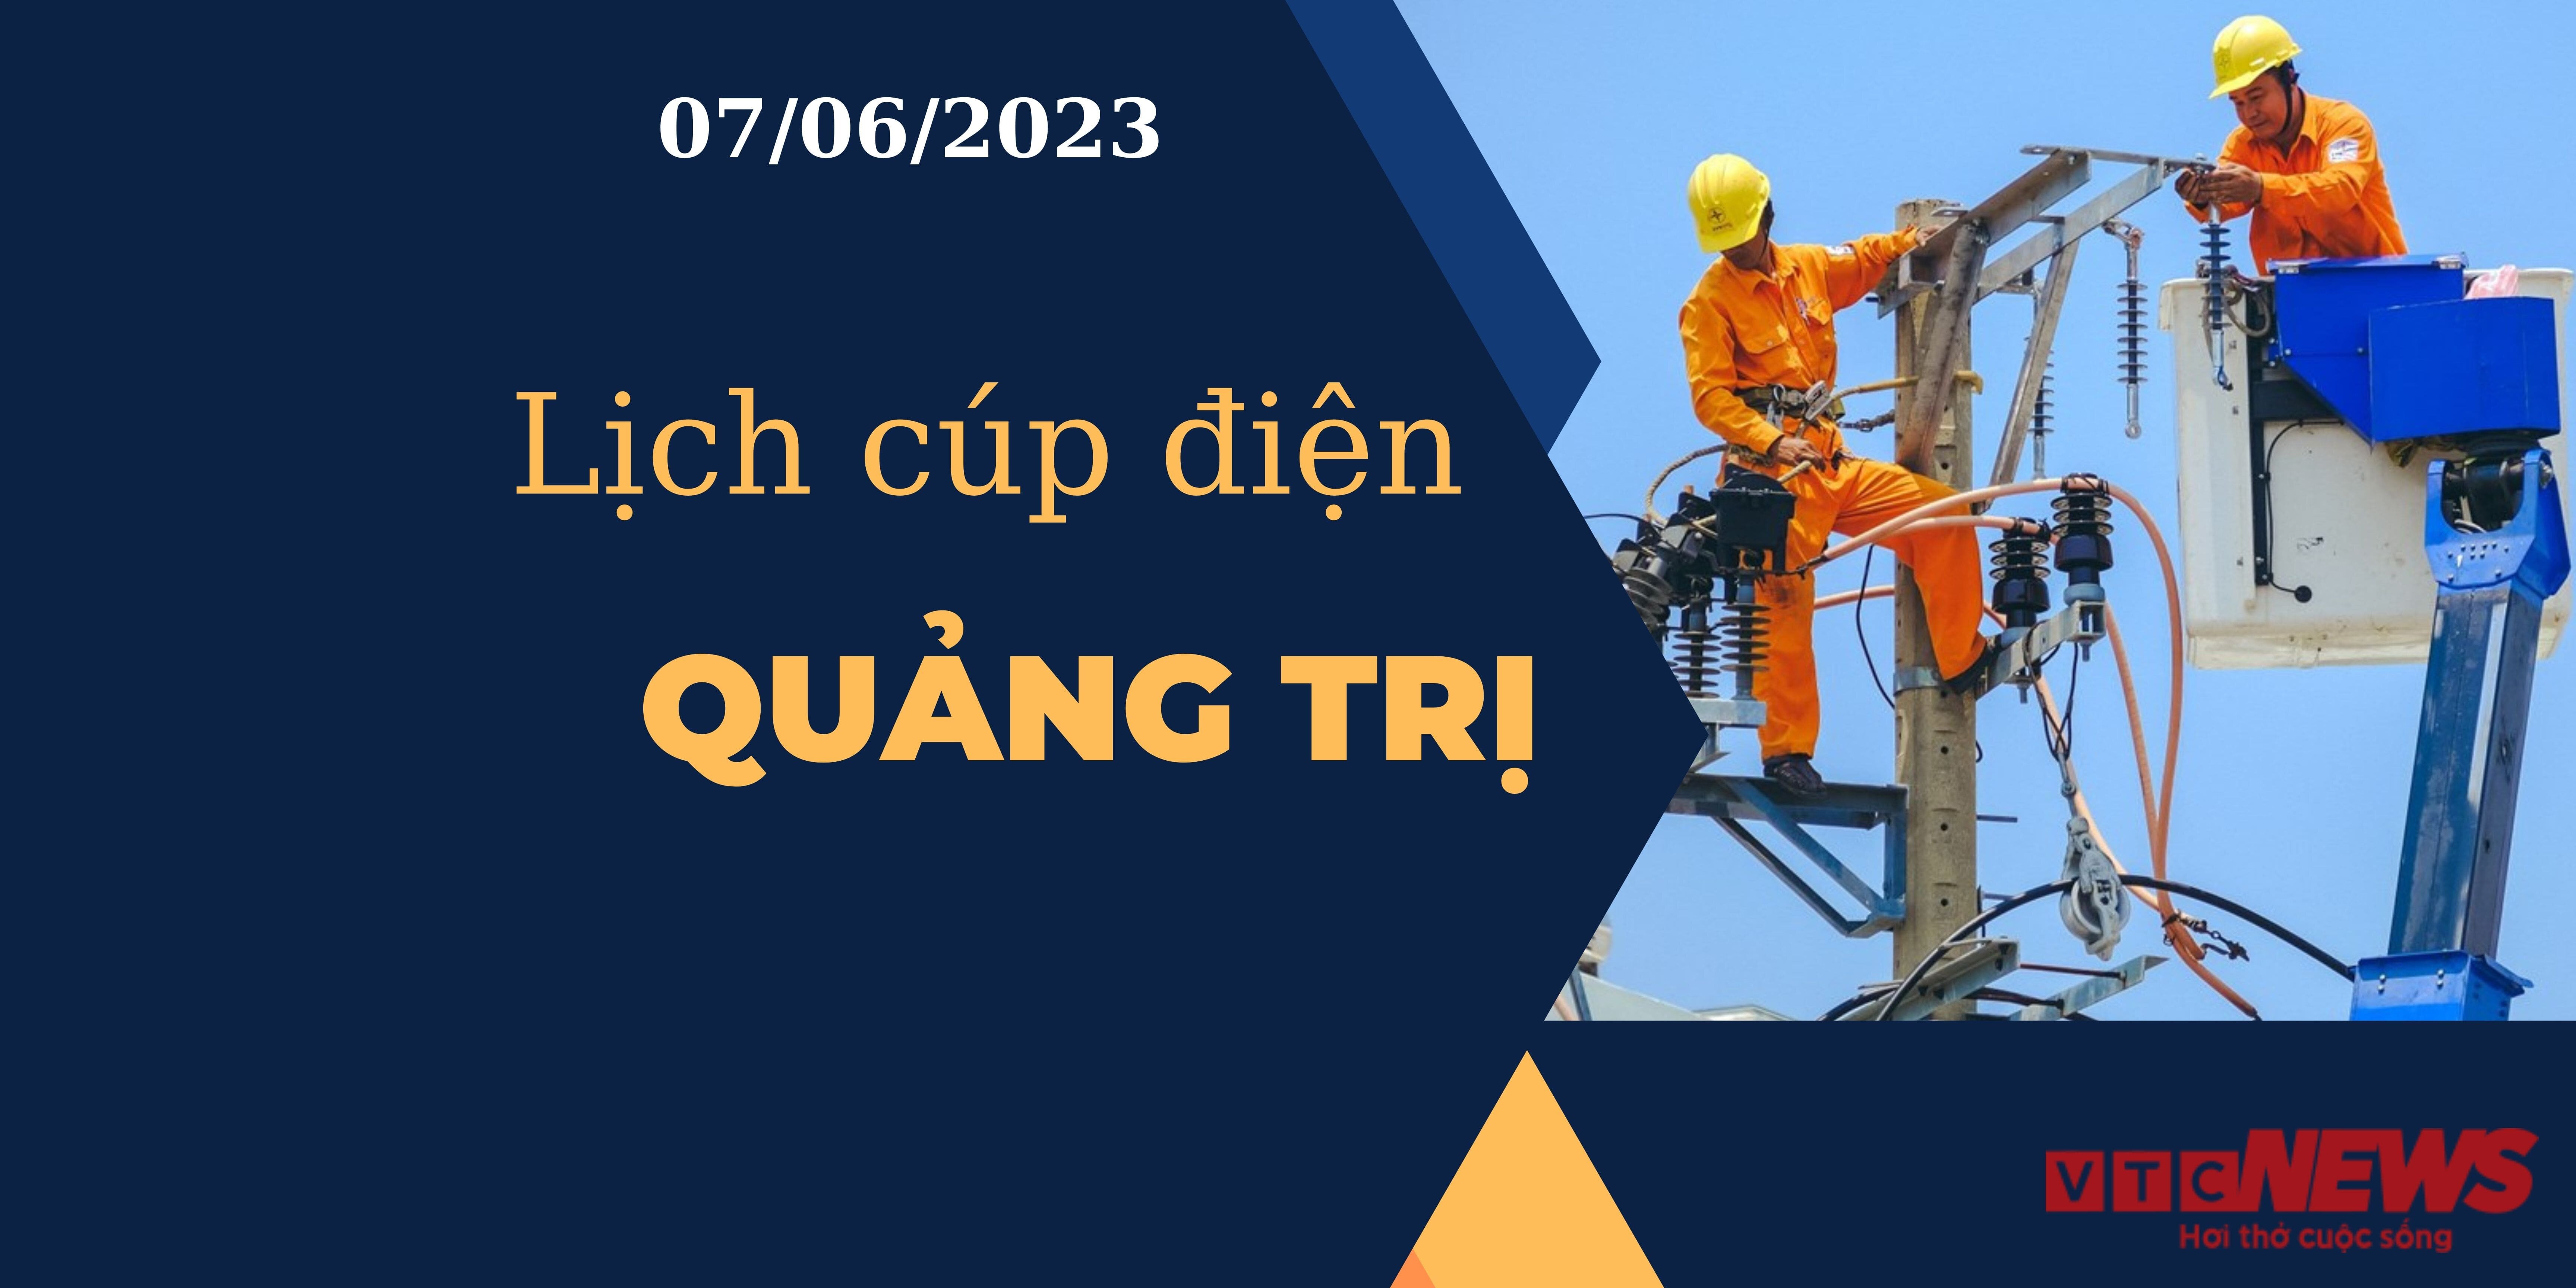 Lịch cúp điện hôm nay tại Quảng Trị ngày 07/06/2023 - 1